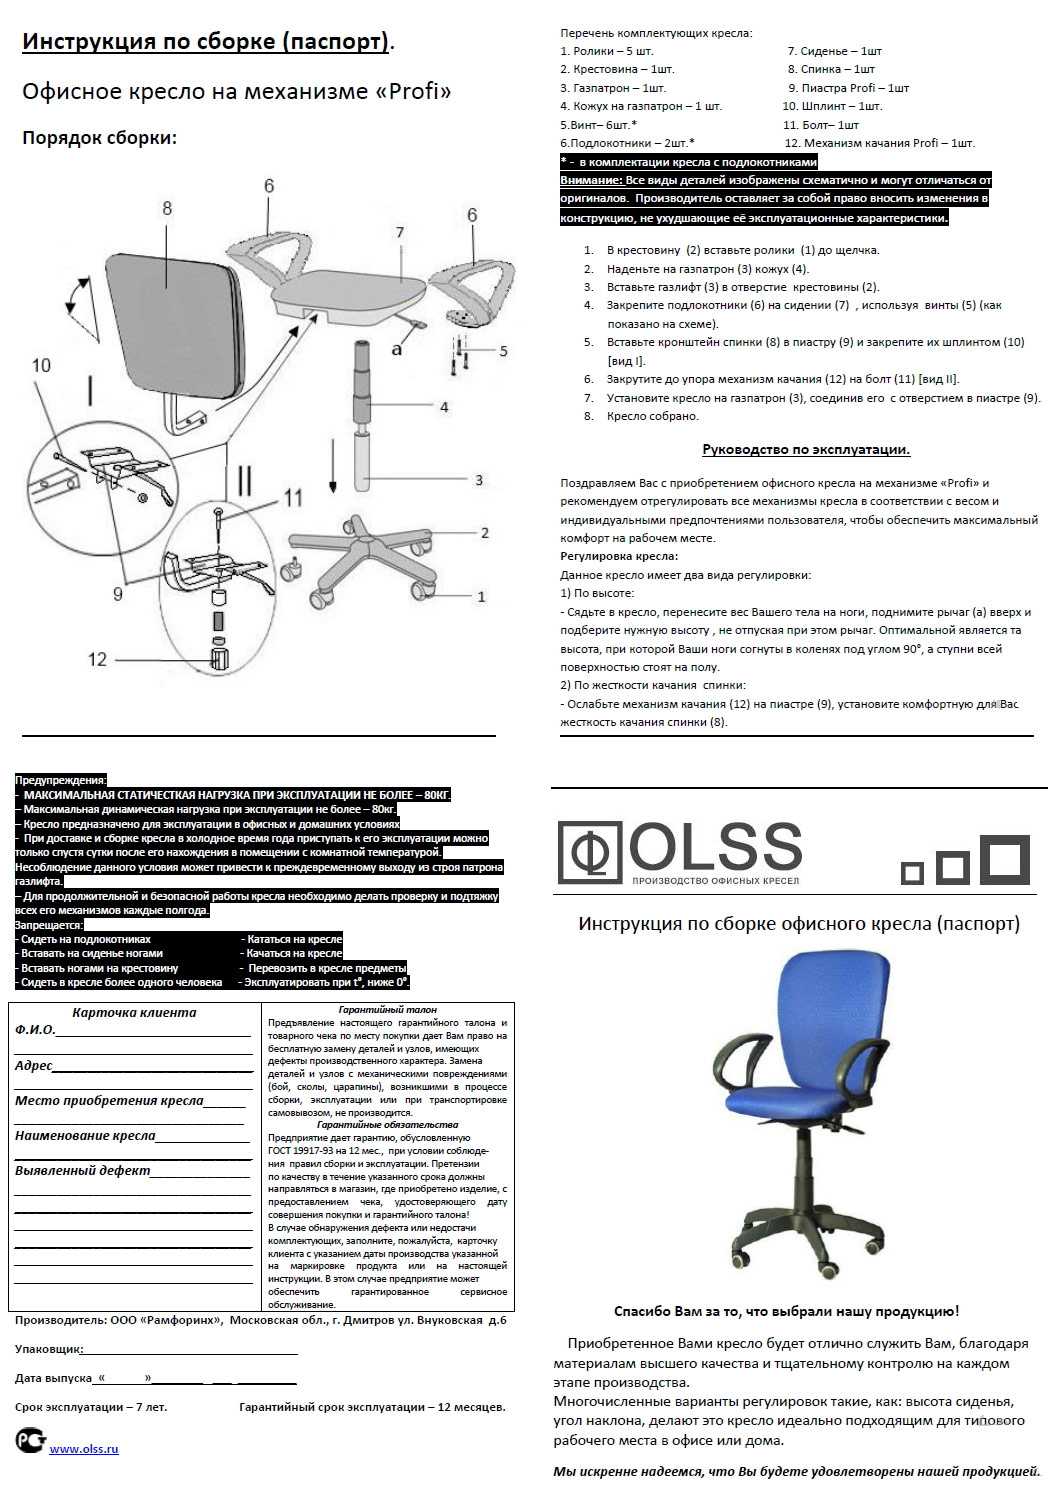 Газлифт для кресла: устройство и принцип работы